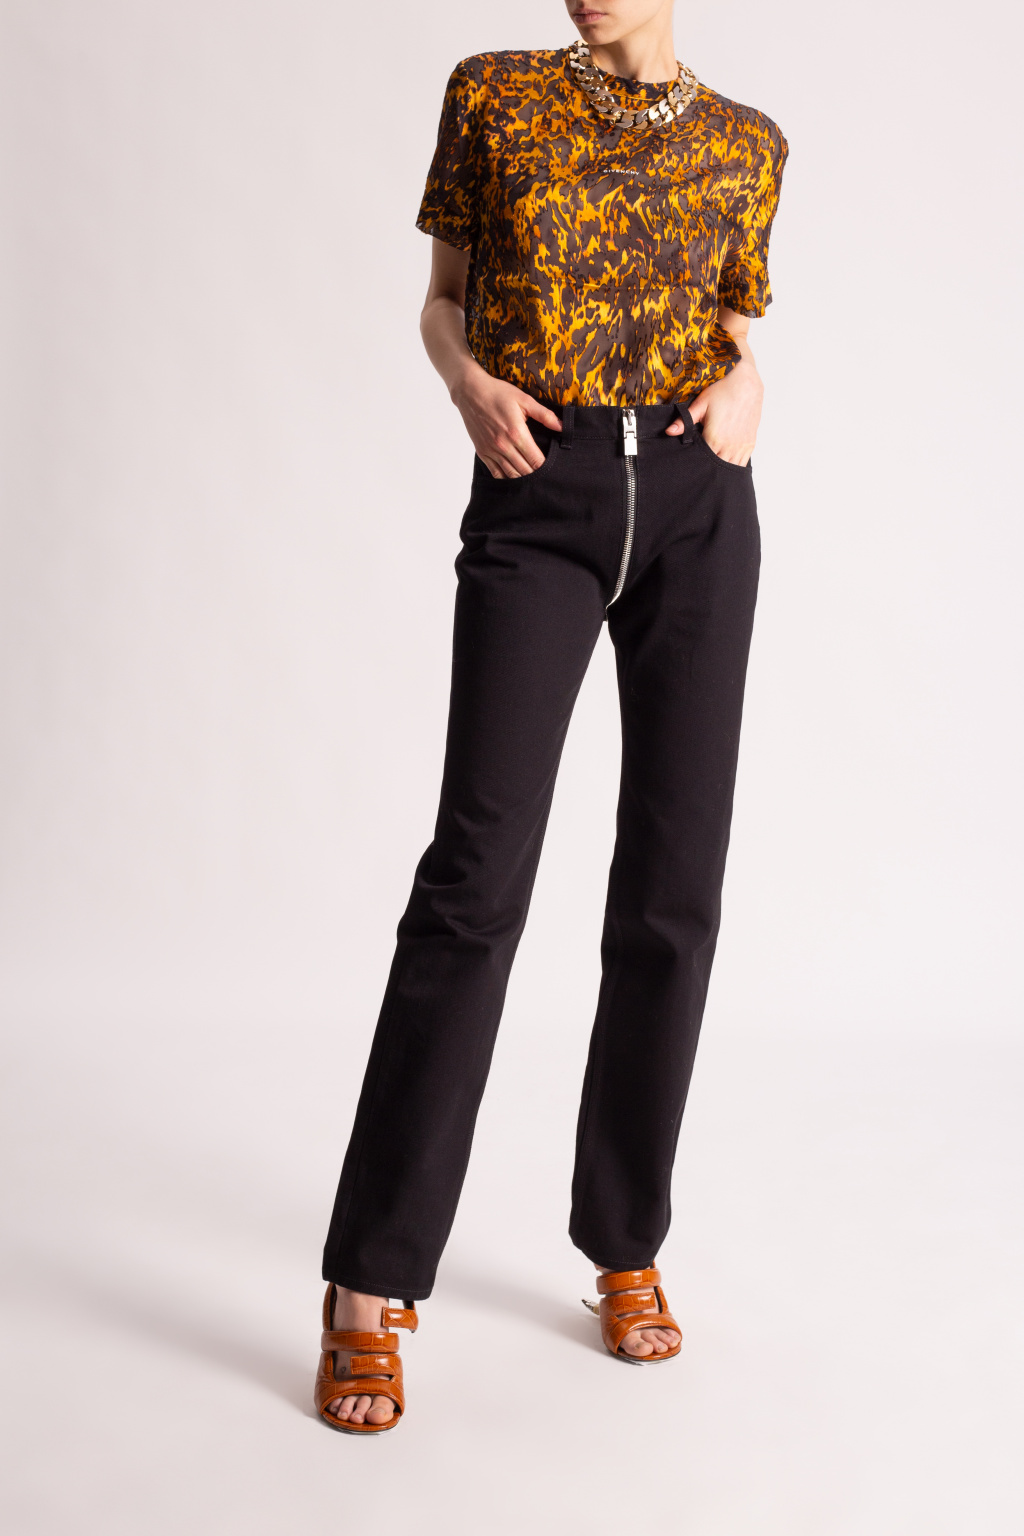 Givenchy spodnie z wyszytym logo givenchy spodnie